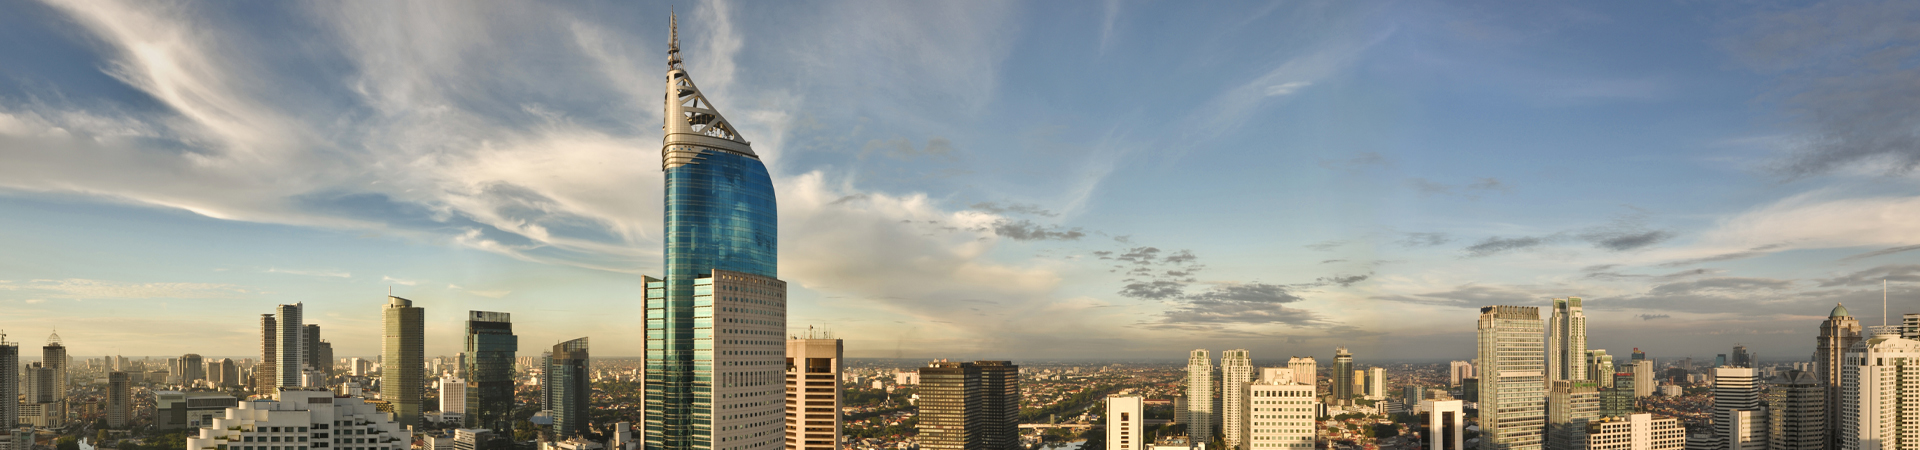 Indonesia - Jakarta city skyline